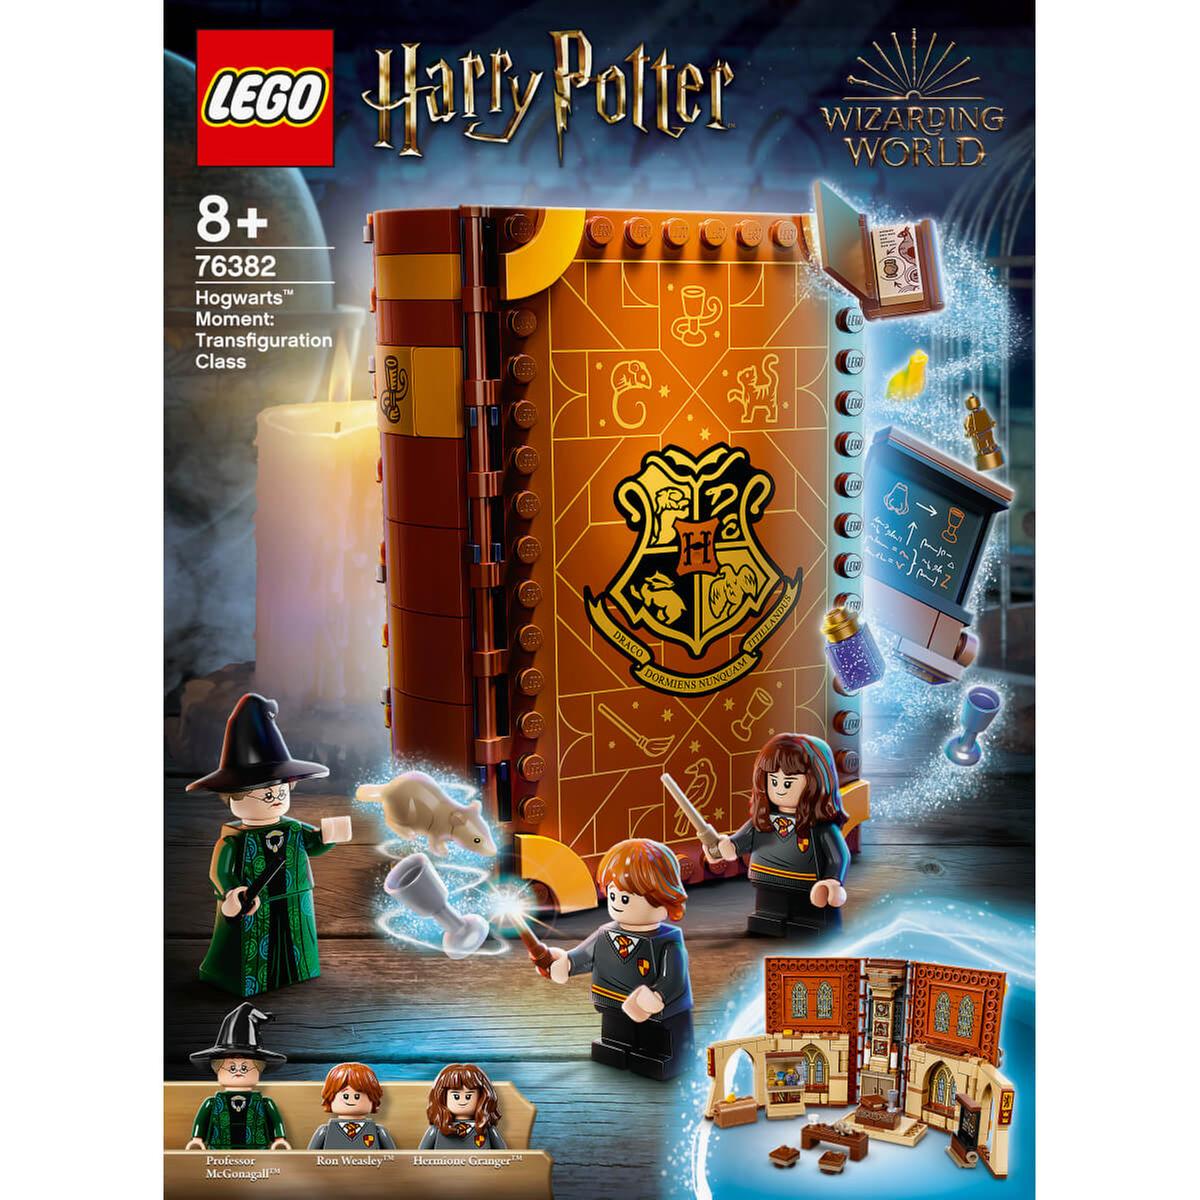 Pack de decoración para fiesta de Harry Potter - 22 piezas por 9,00 €